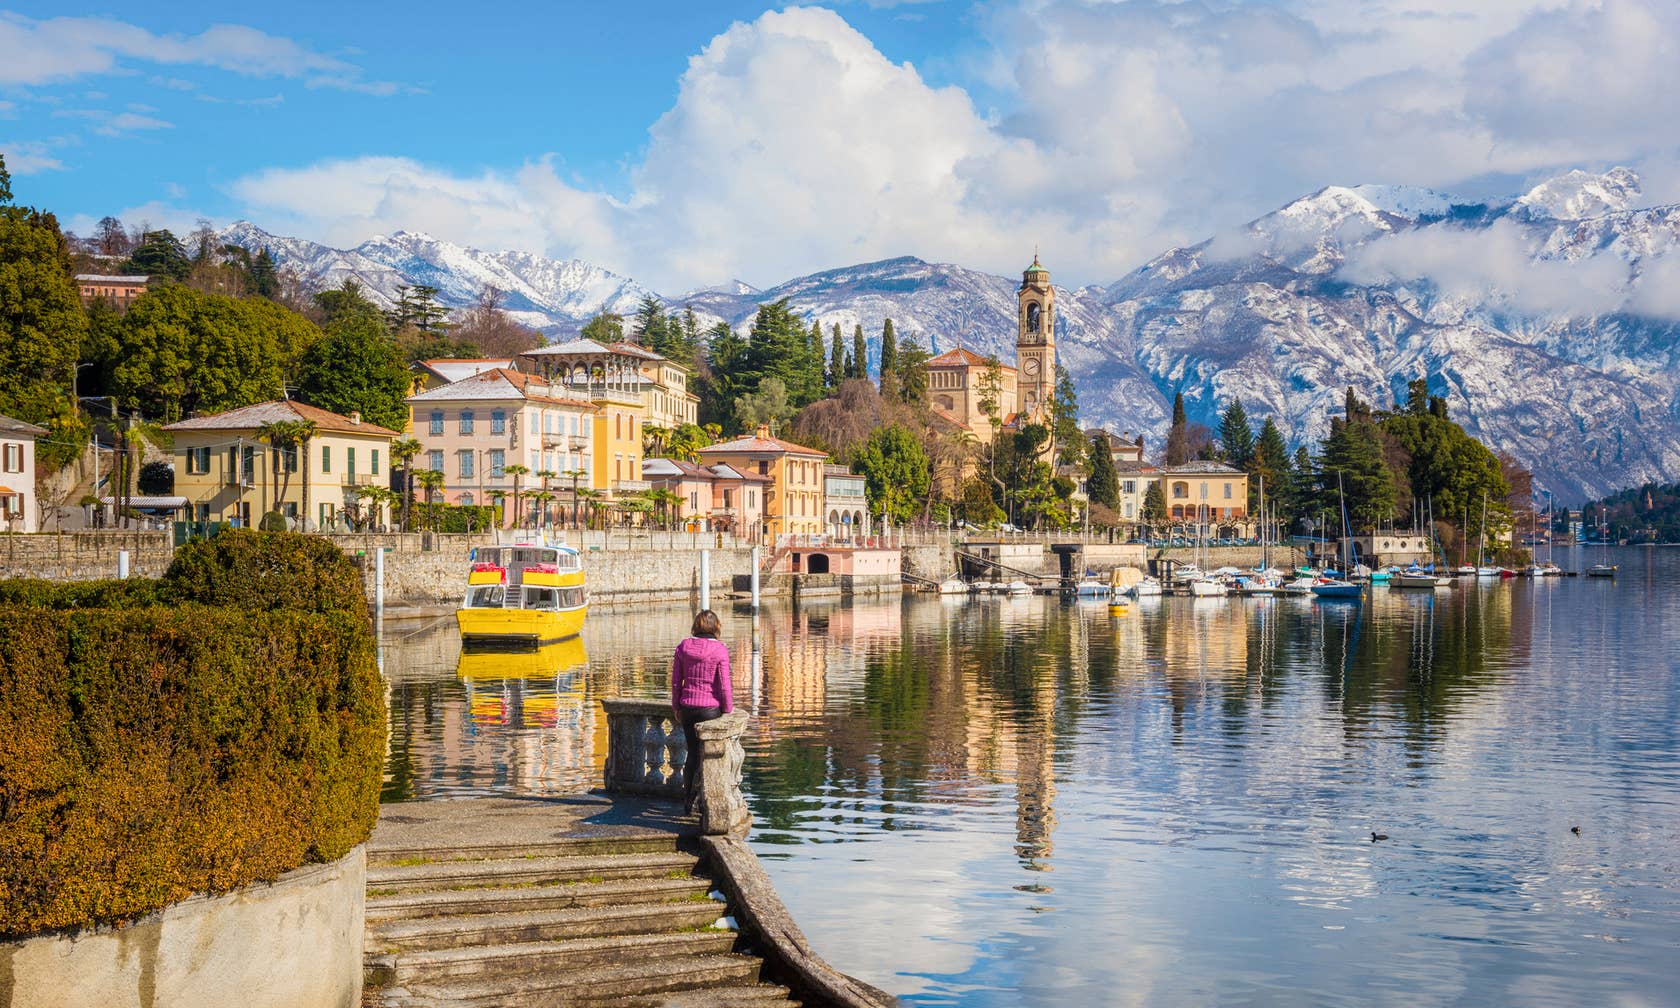 Affitti per le vacanze a Lago di Como